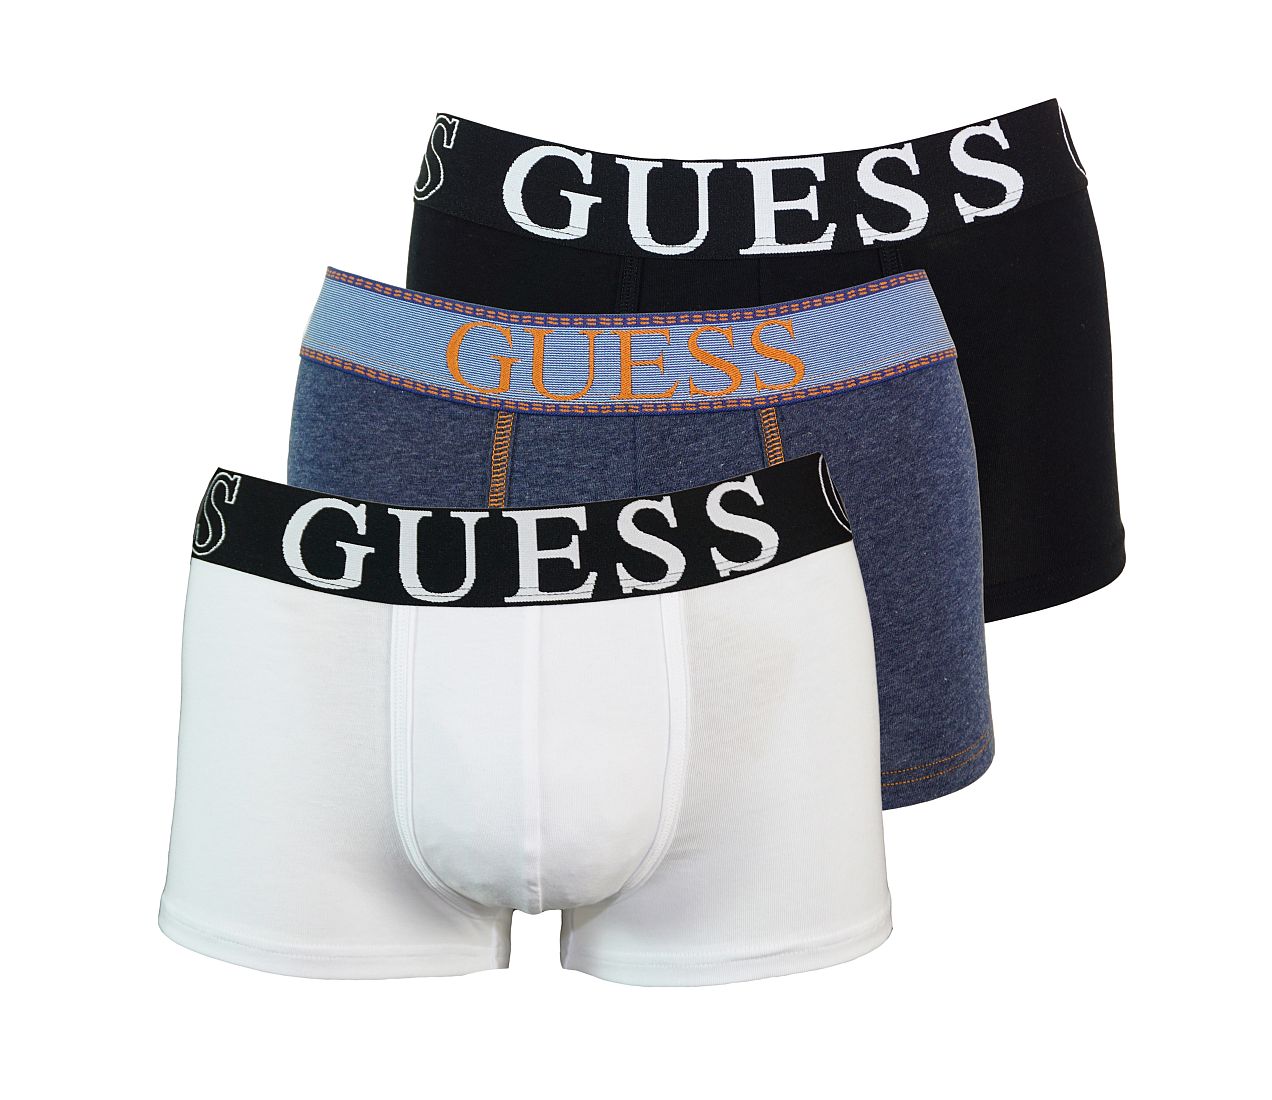 GUESS 3er Pack Shorts Unterhosen Trunks weiss, blau, schwarz Combo Basic U54G1LJEY24 FS95